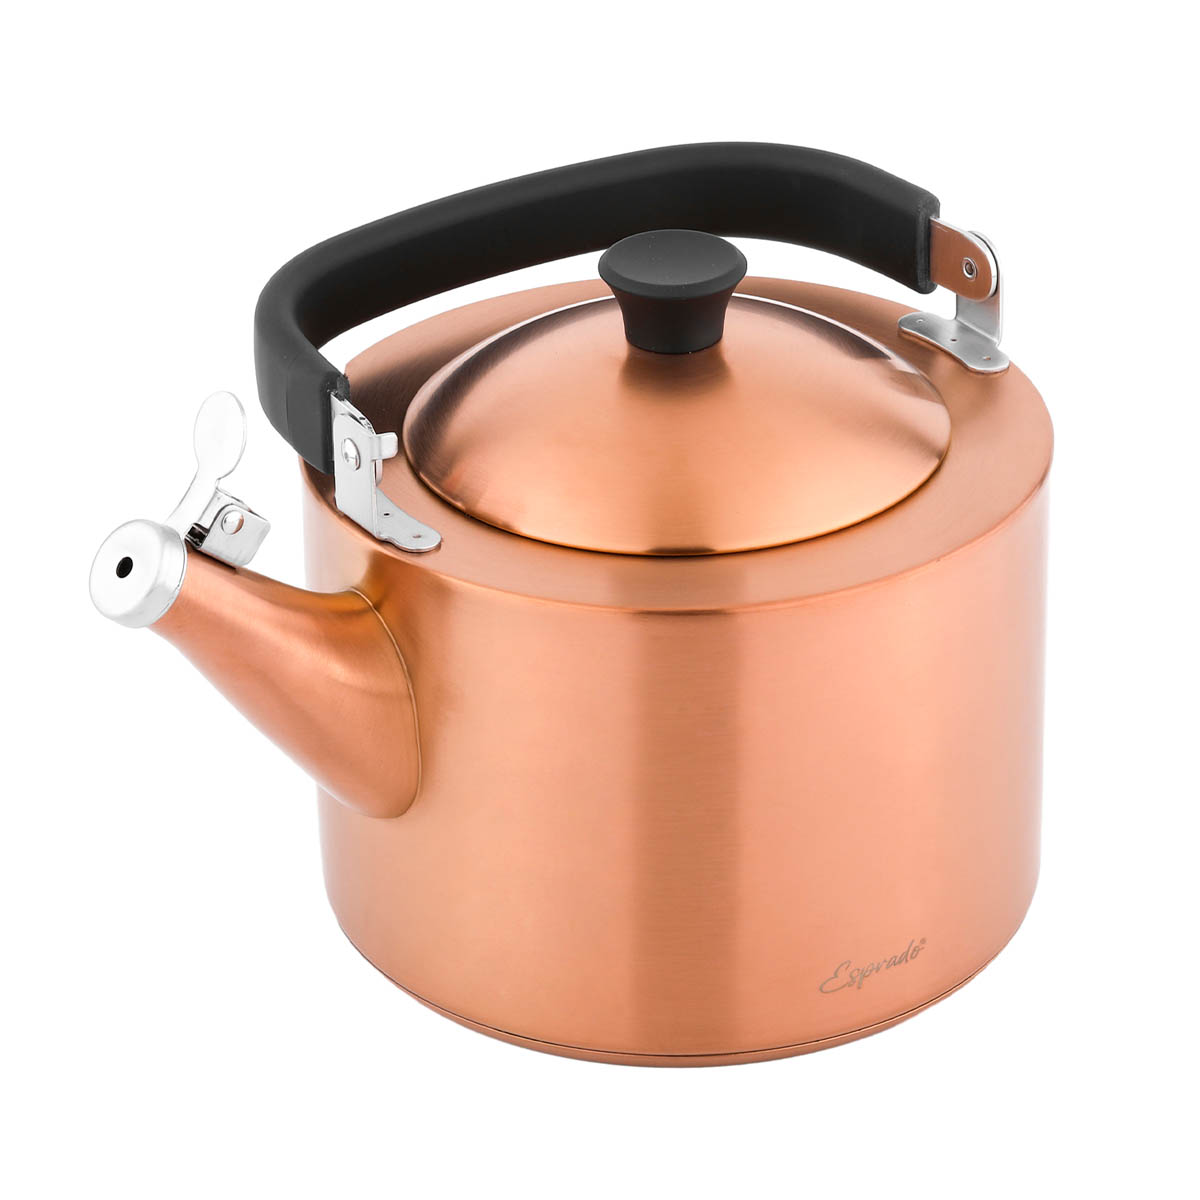 Чайник наплитный со свистком Esprado Magnifico 2,5л, матовый бронзовый Esprado MGN25B3E109, цвет золотистый